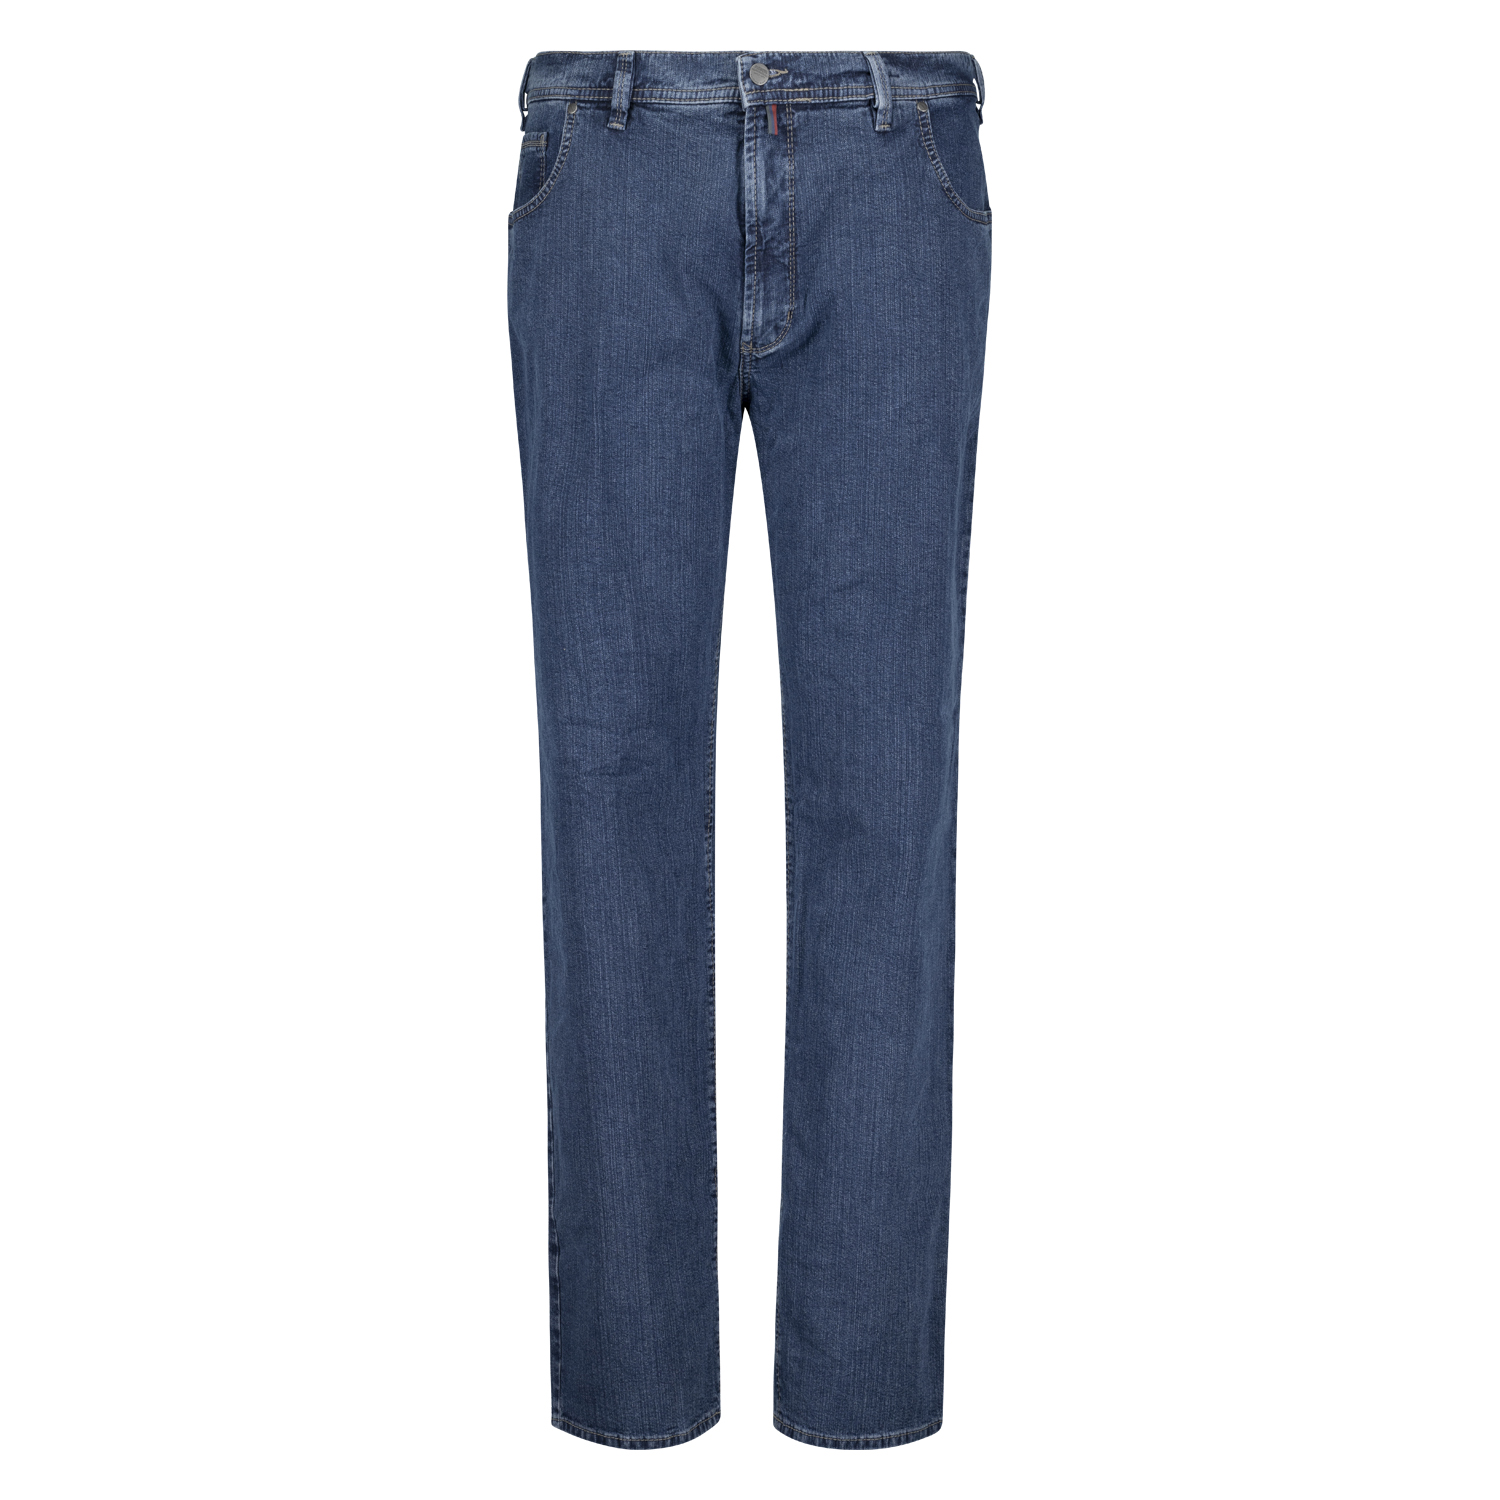 Pioneer Five Pocket Jeans untersetzte Größen Modell "Peter" in 28 - 40 blue stonewash